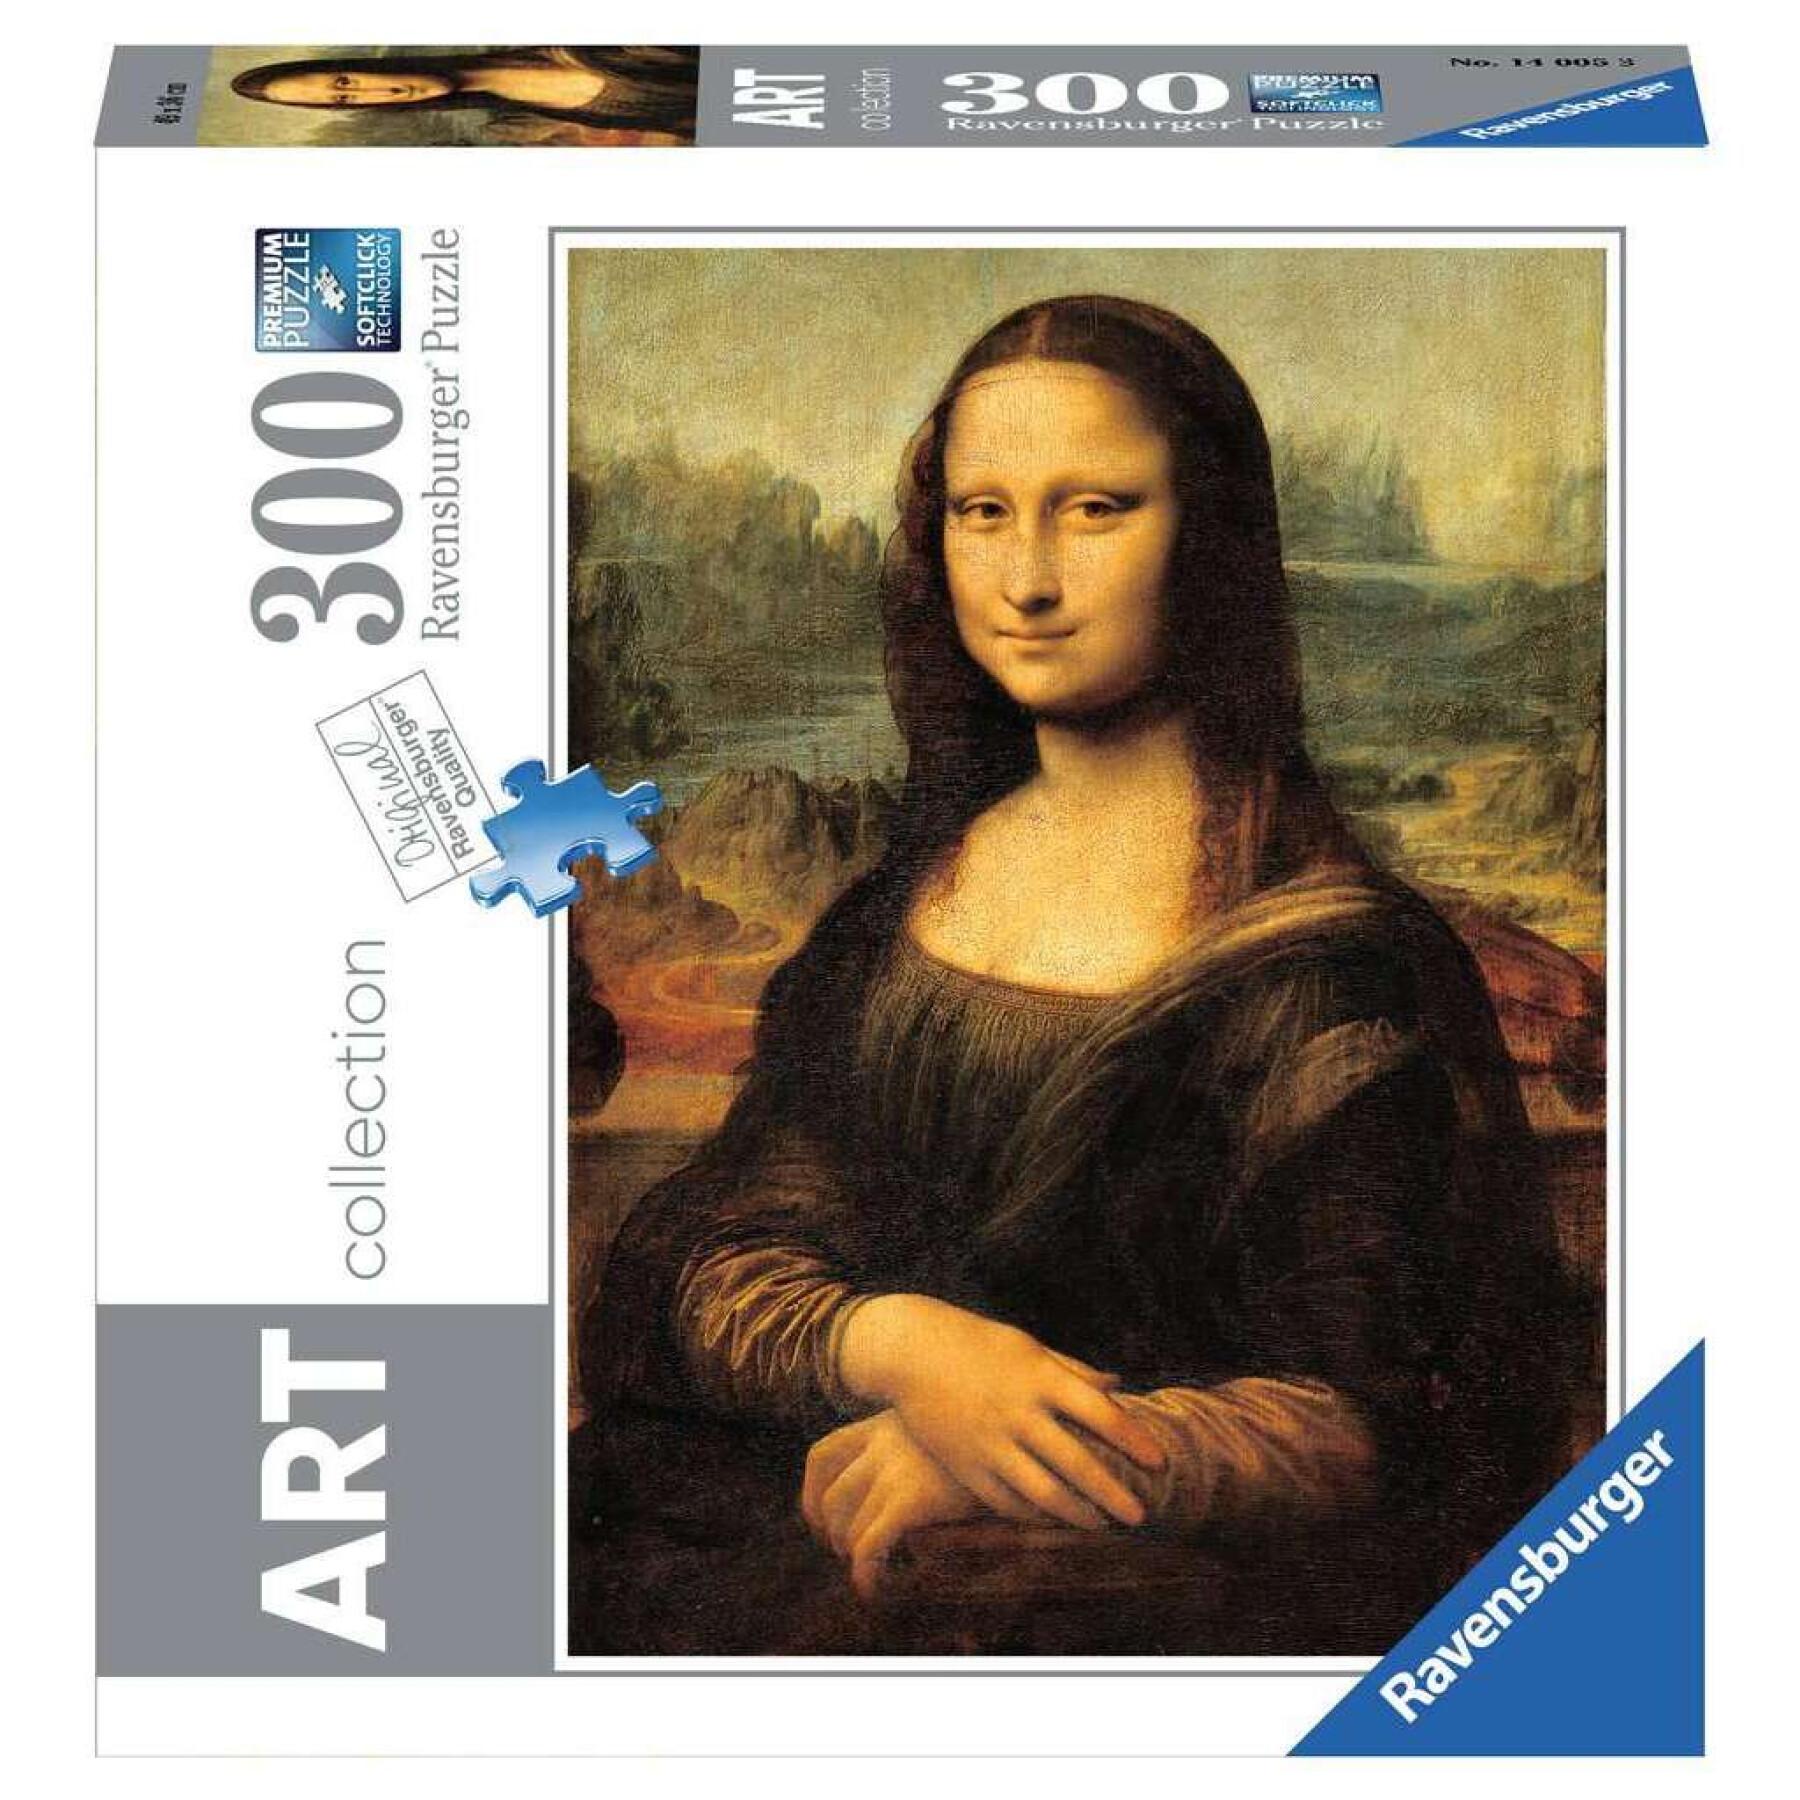 Puzzle 300 peças colecção de arte - Mona Lisa / Leonardo da Vinci Ravensburger